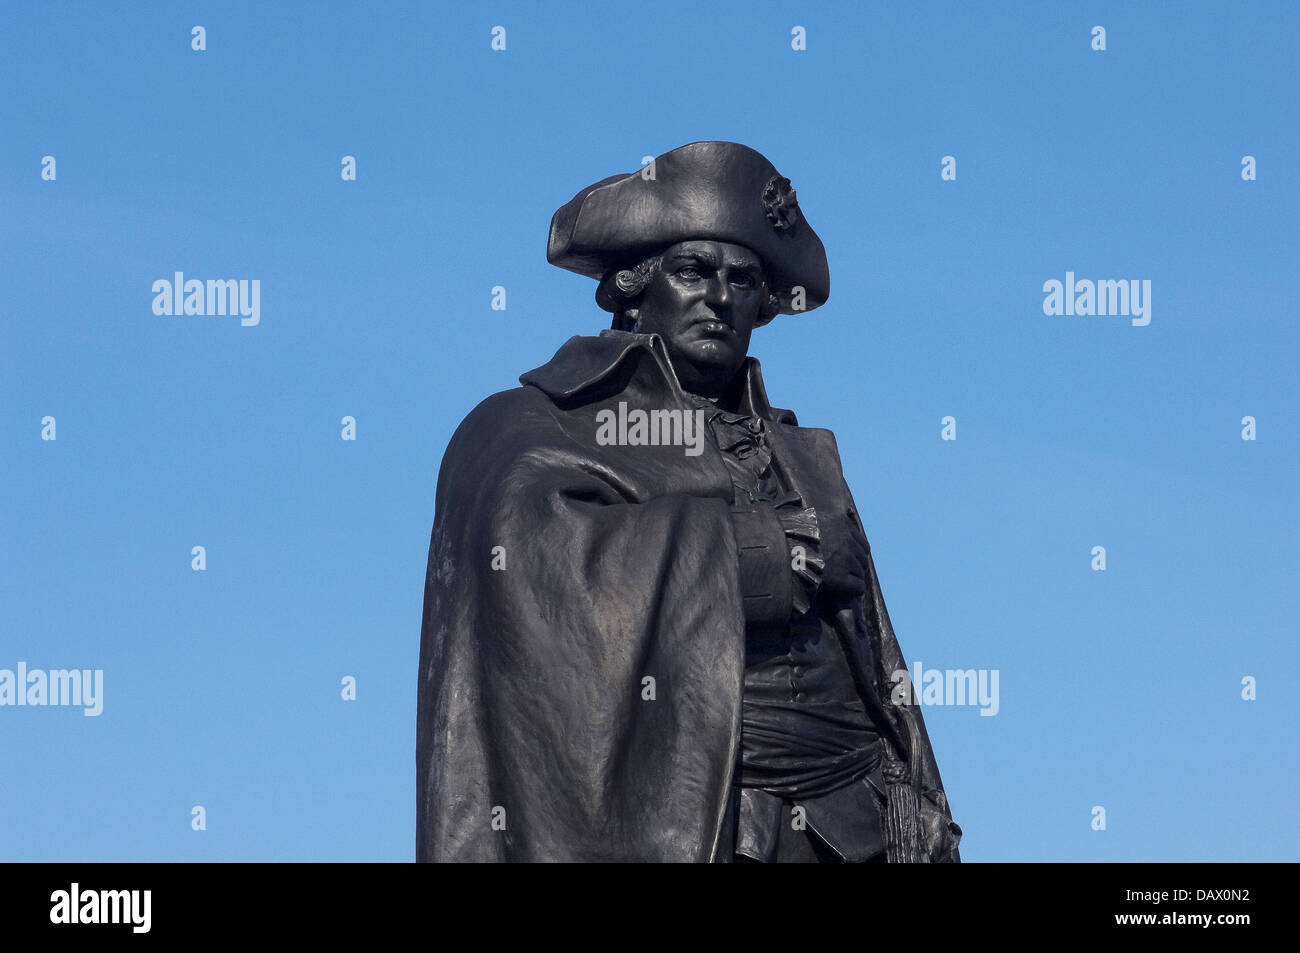 Statue du baron Von Steuben drillmaster prussien à Valley Forge, Pennsylvanie. Photographie numérique Banque D'Images